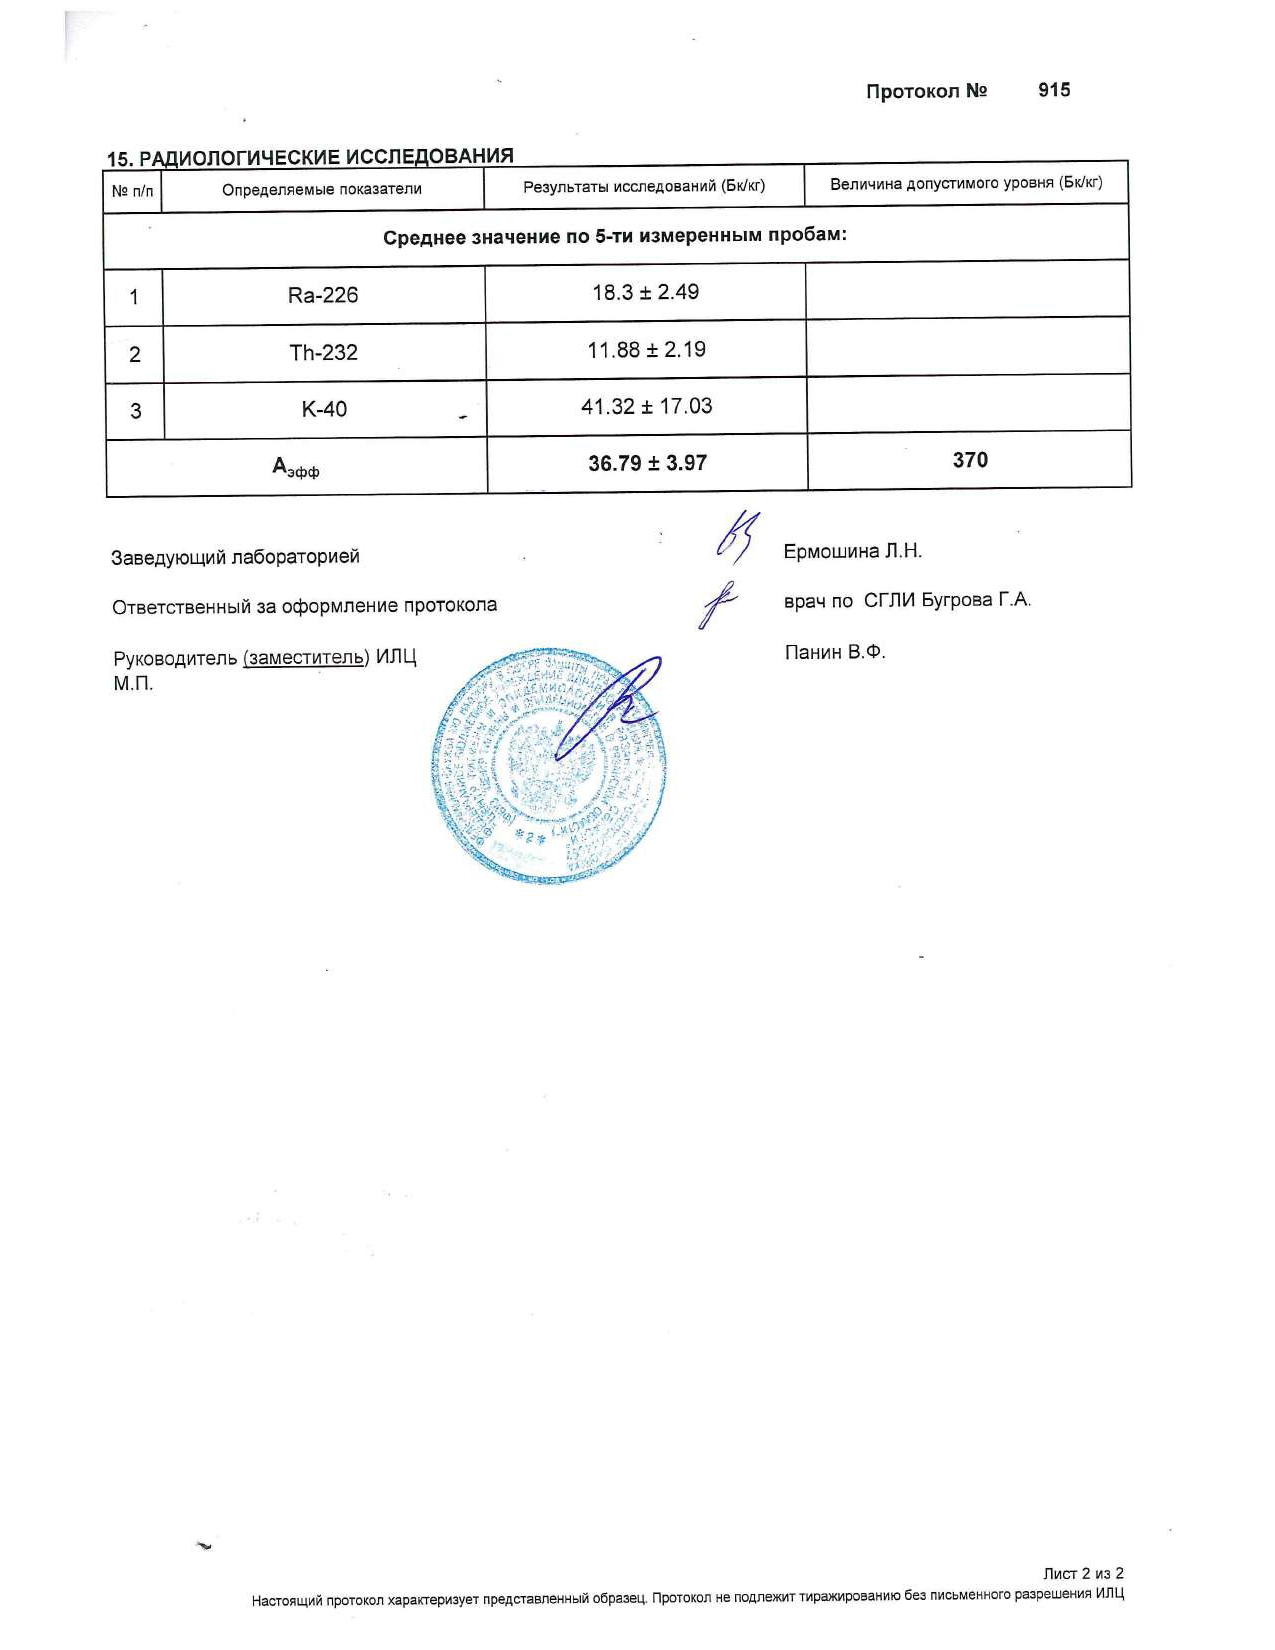 Гигиенический сертификат ООО Фибратек лист 2